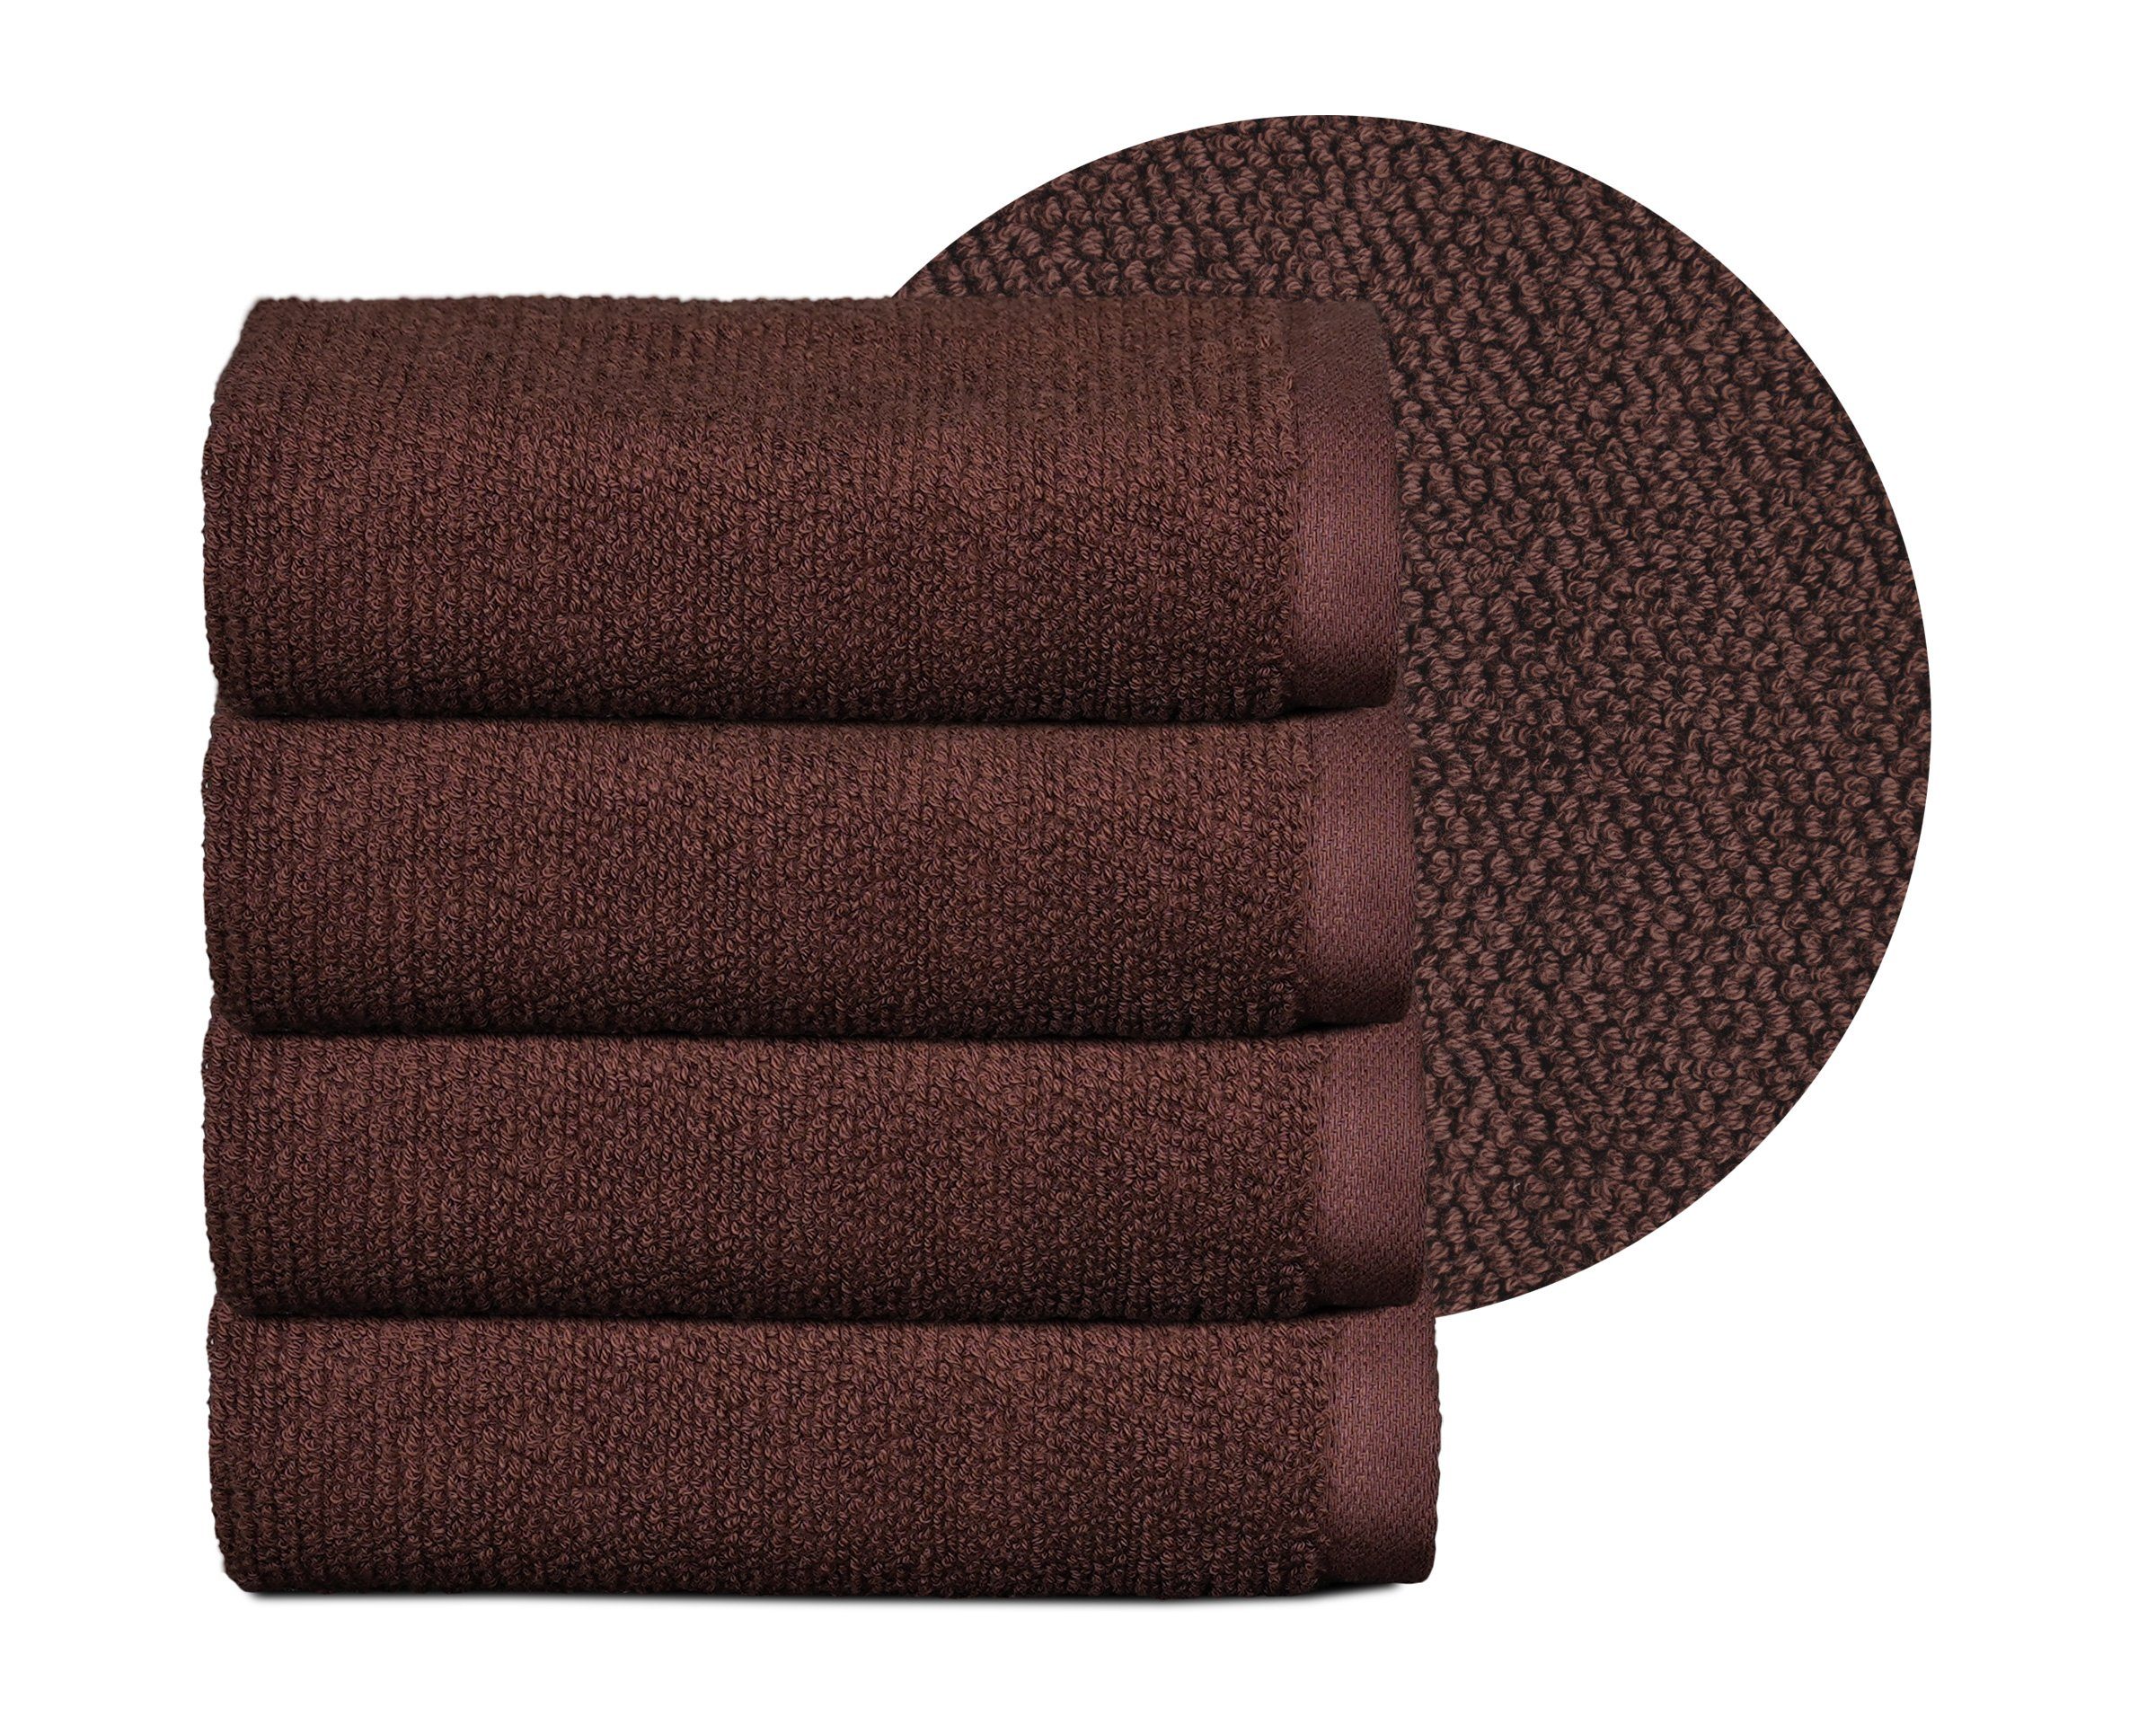 Beautex Handtuch Set Handtuch Set, Made in Europe, Frottier, (Multischlaufen-Optik, Frottier Premium Set aus 100% Baumwolle 550g/m) Dunkelbraun